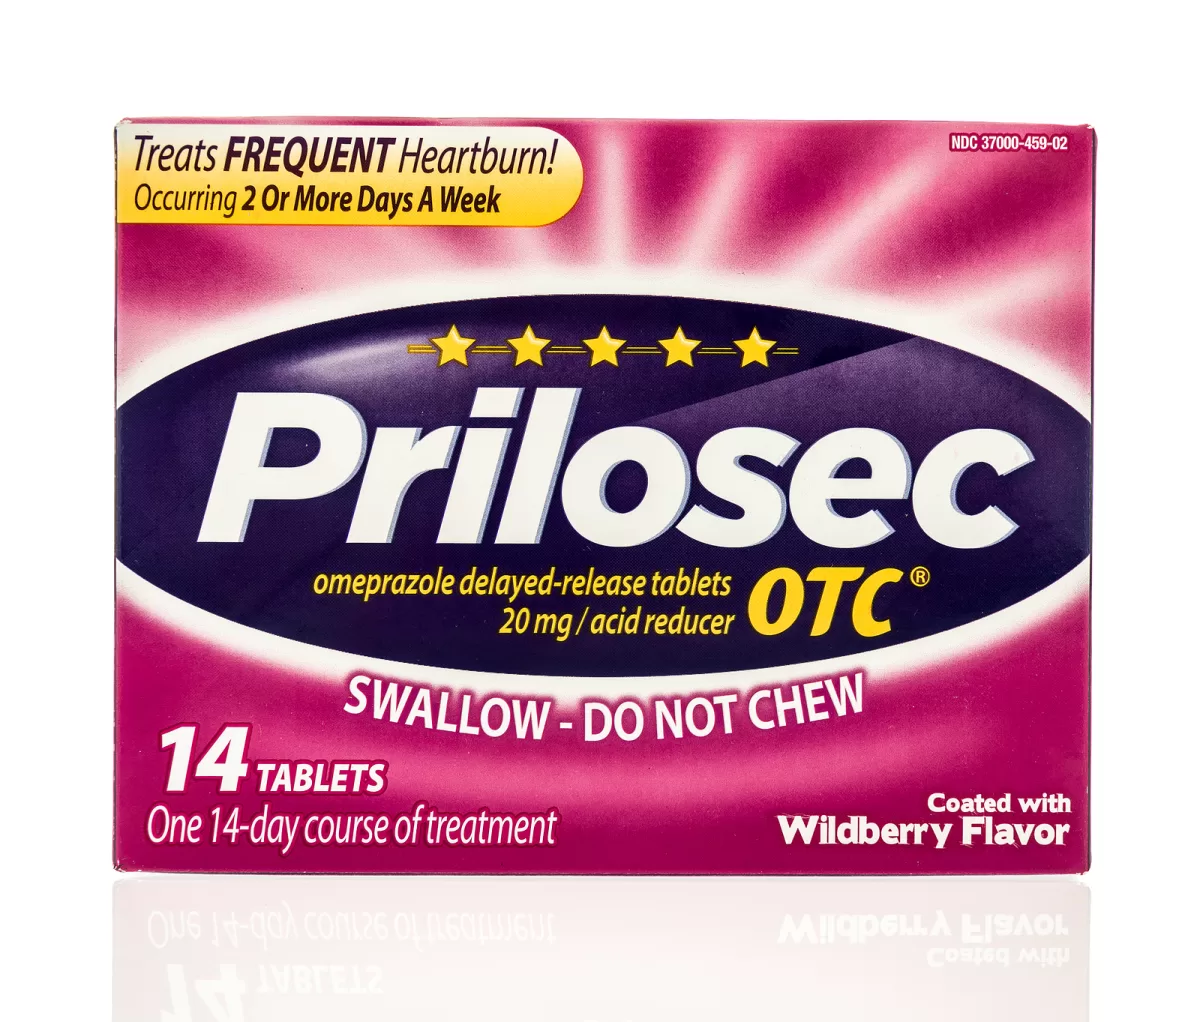 prilosec (omeprazole) box is shown, a medication in PPI class